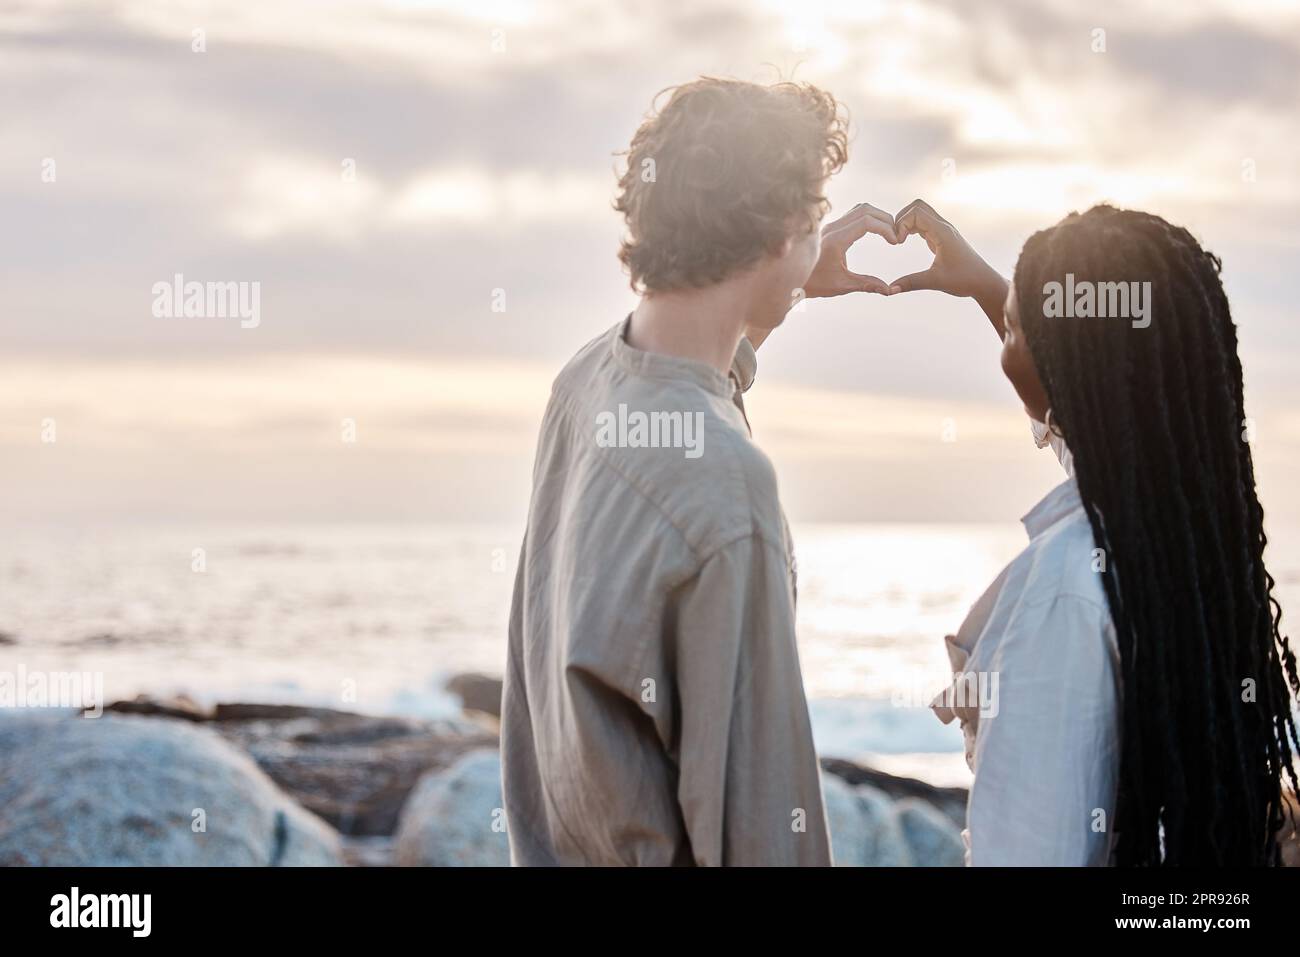 Vue arrière d'un jeune couple multiracial étant romantique en faisant un geste de coeur avec leurs mains à la plage Banque D'Images